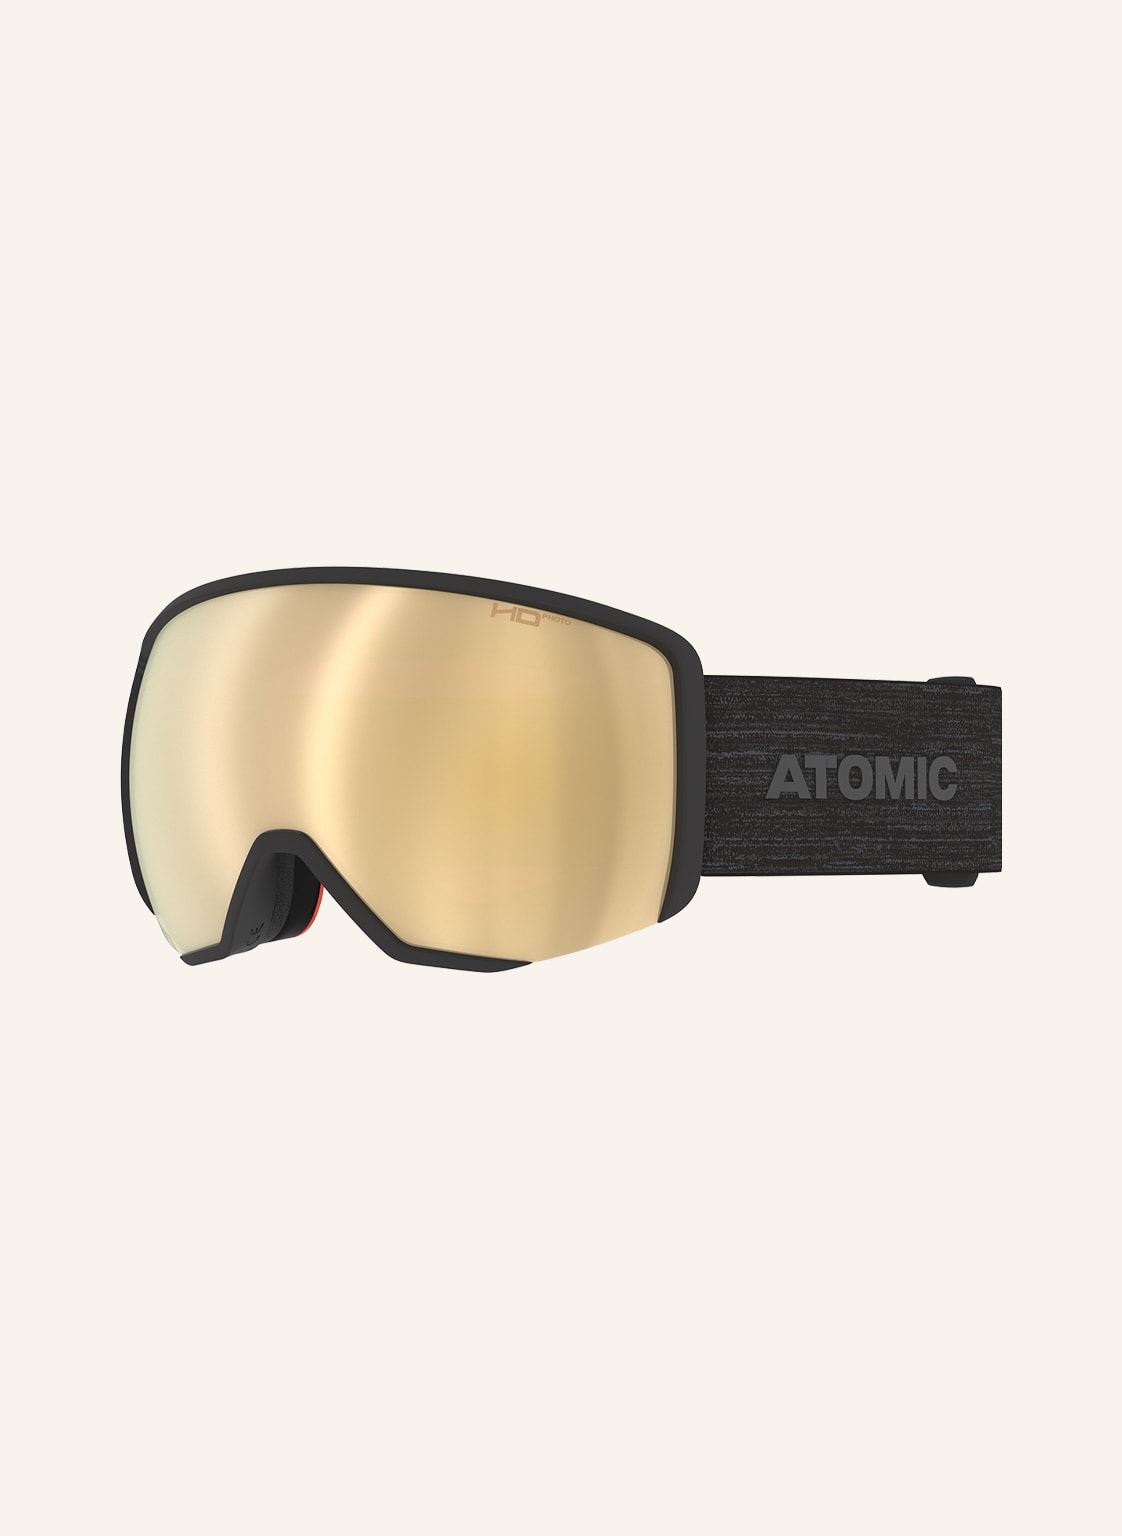 Atomic Skibrille Revent L Hd Photo schwarz von Atomic